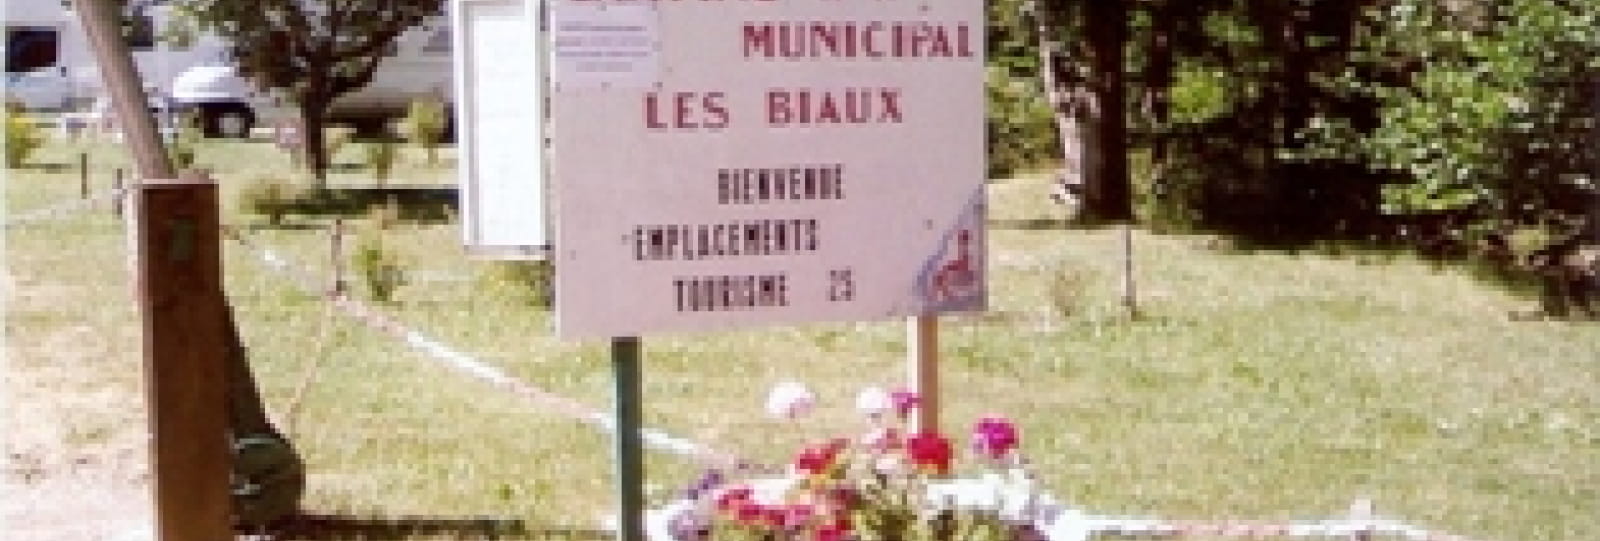 Gemeentelijk camping Les Biaux